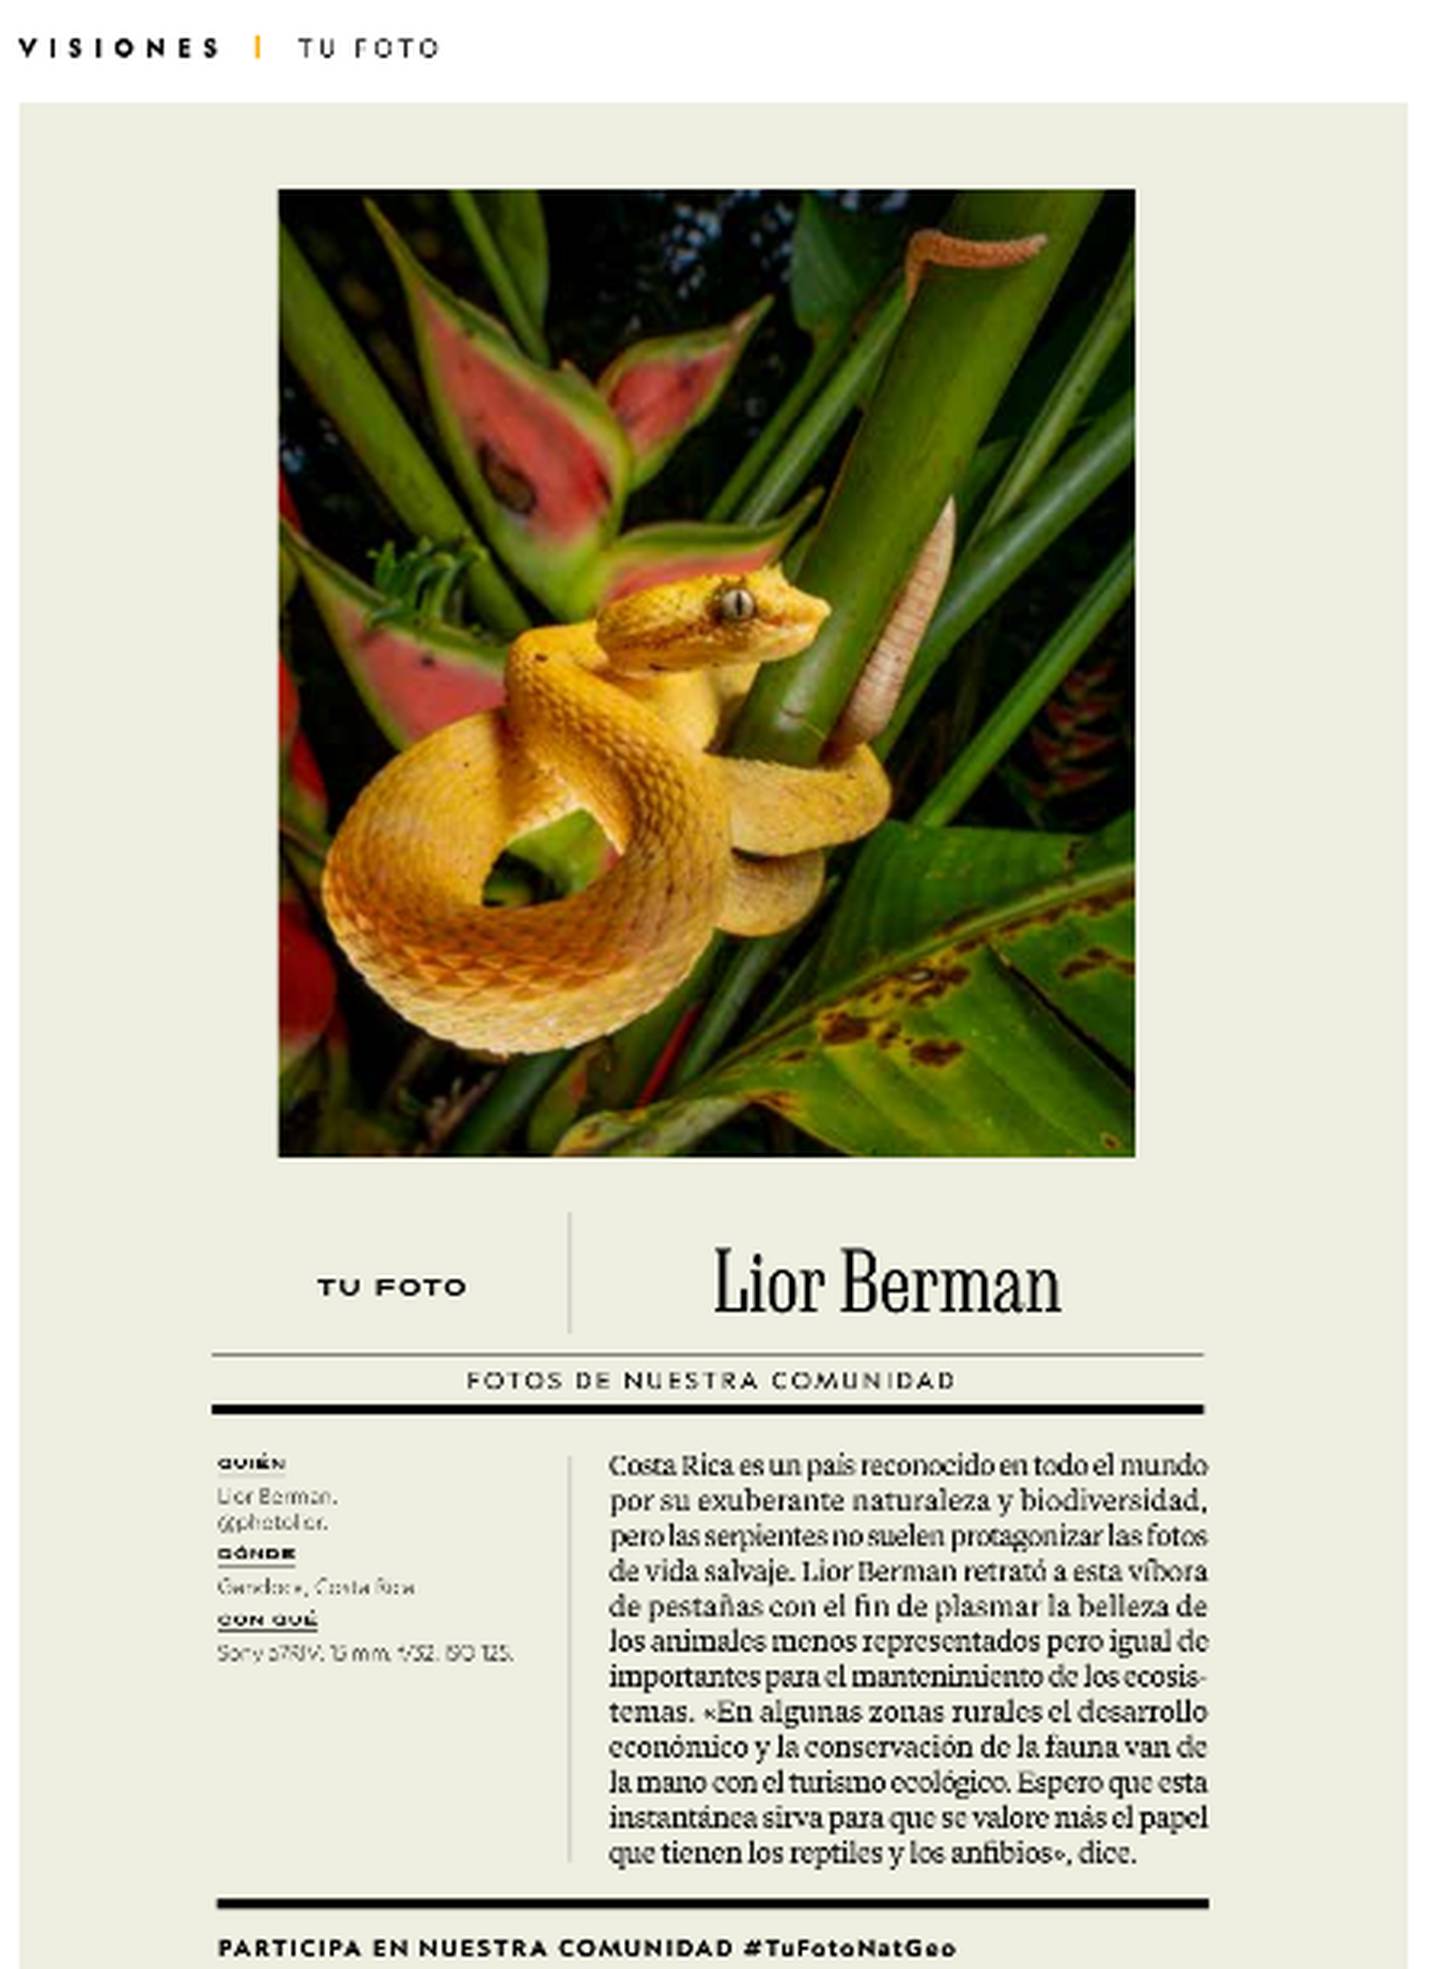 El joven tico Lior Bernan se dedica a la fotografía de fauna silvestre. Una de sus fotografías la publicó la revista National Geographic